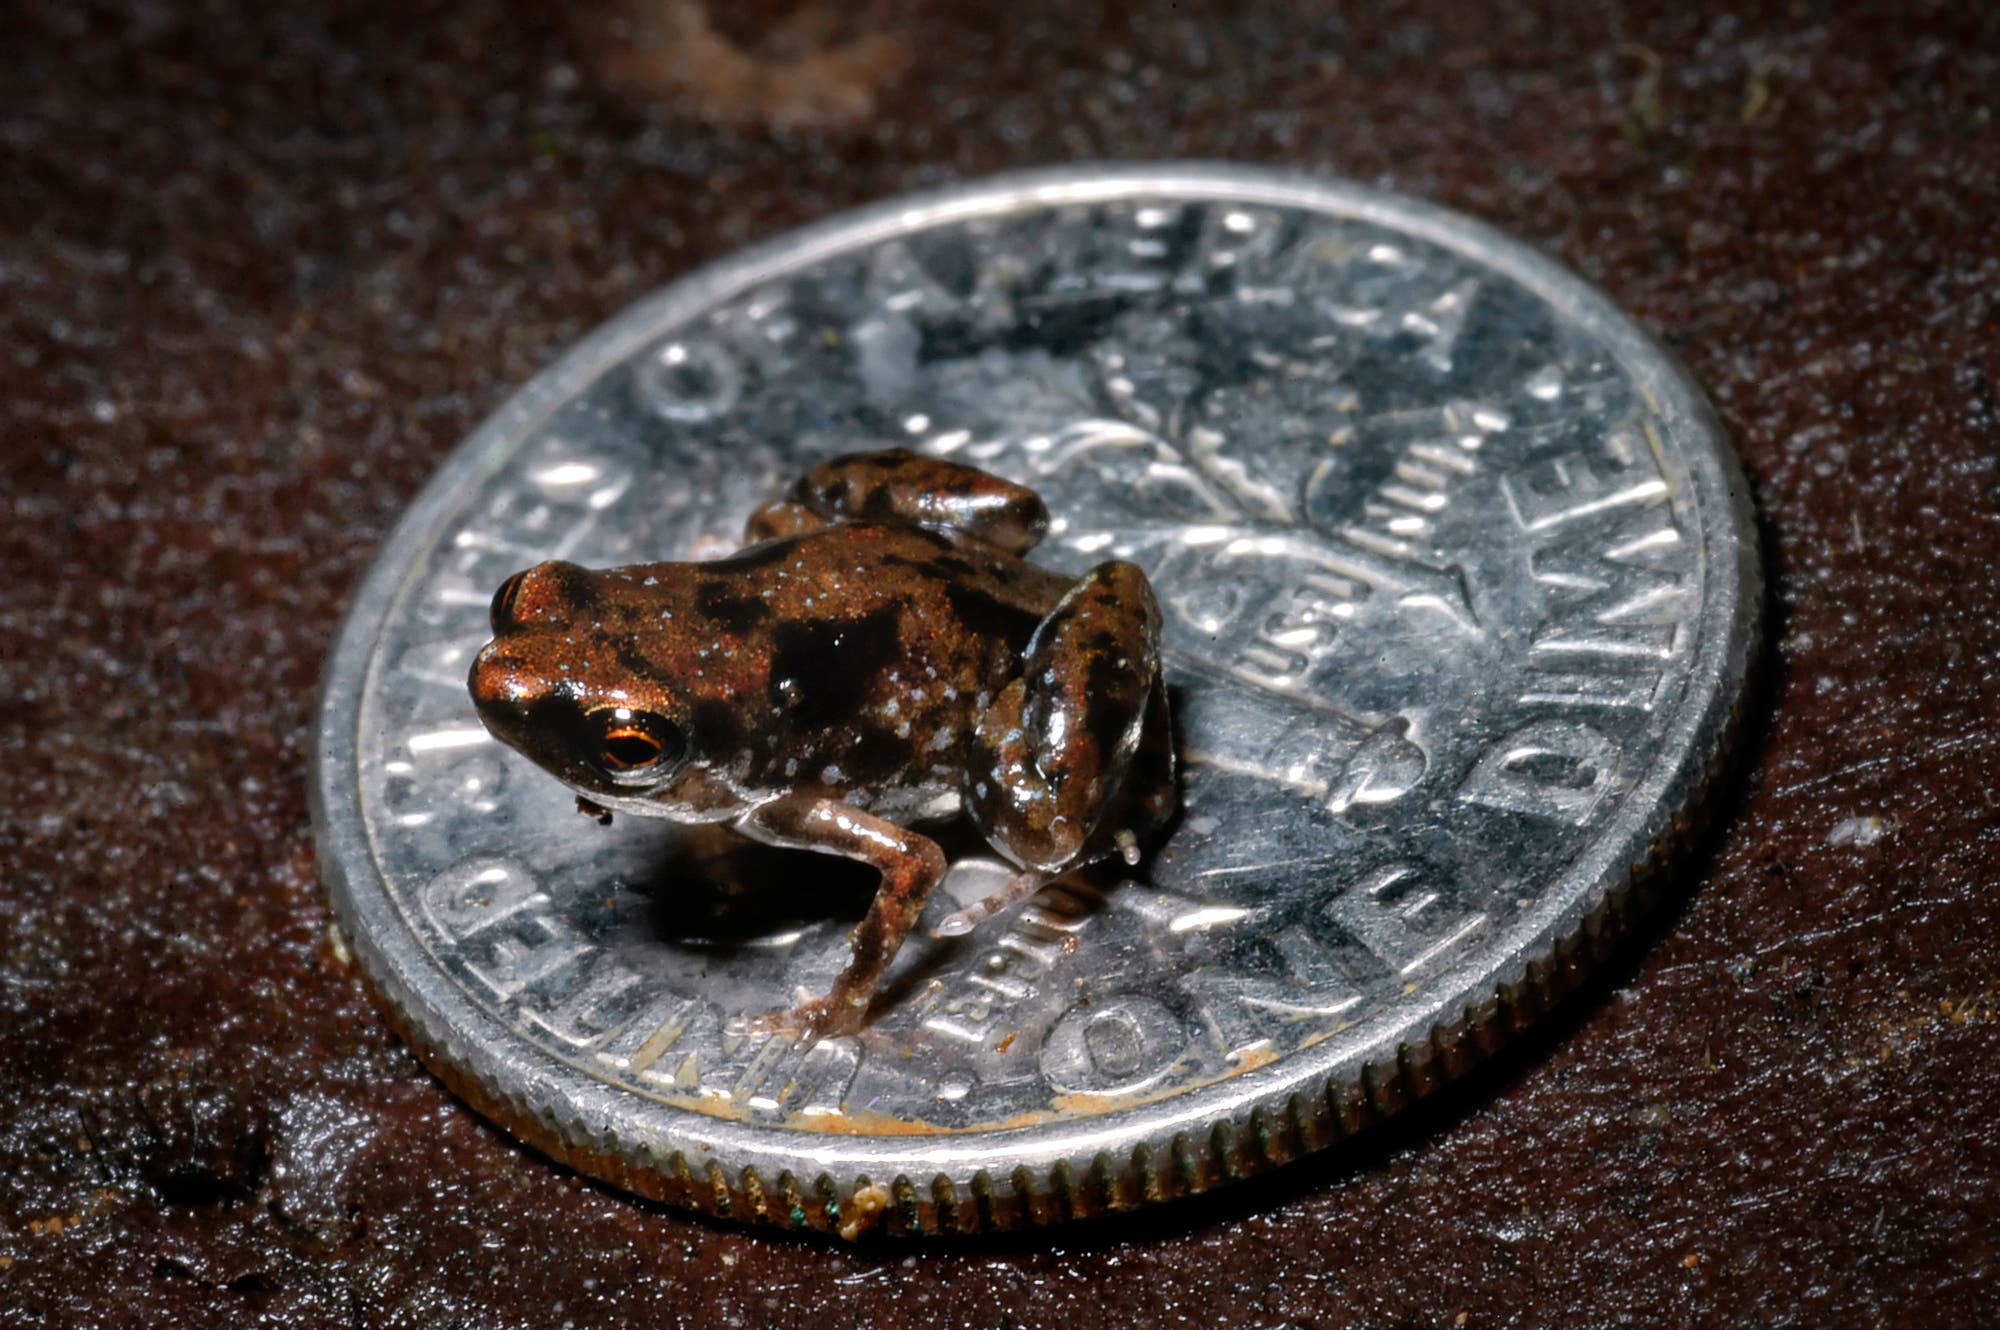 Der kleinste Frosch der Welt